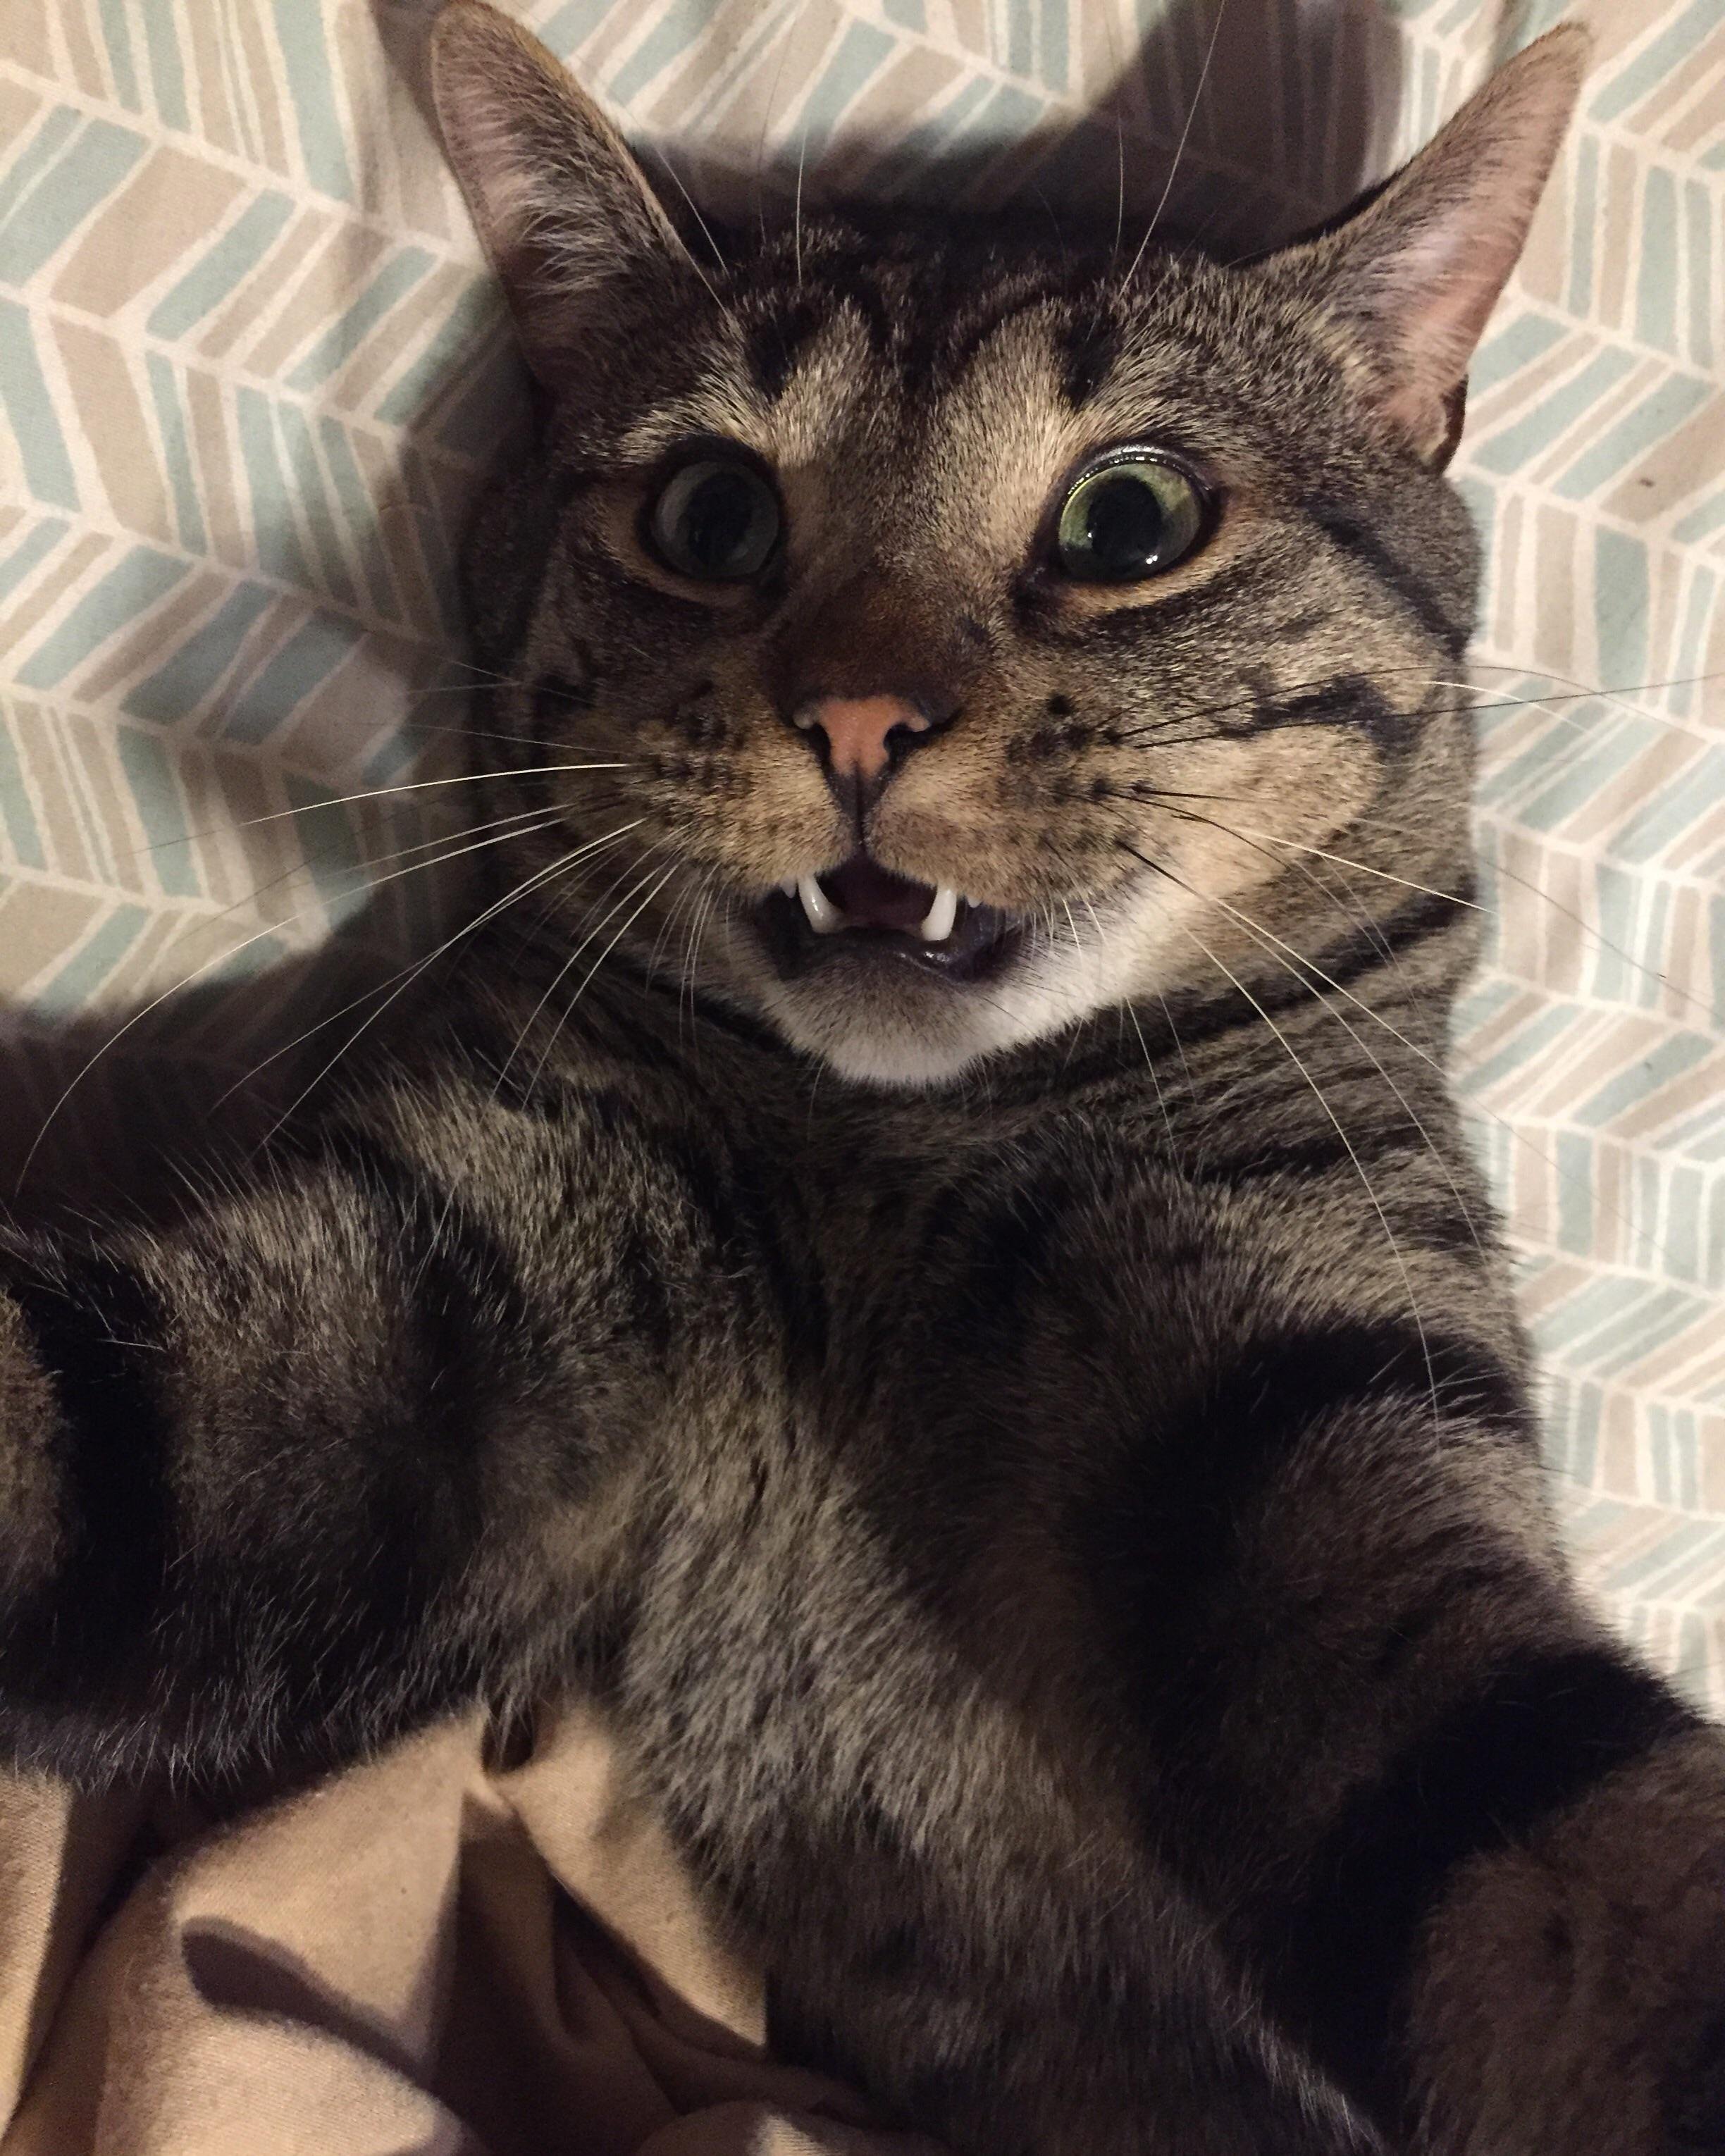 Meow Moe selfie. #Cats #Cat #Kittens #Kitten #Kitty #Pets # Pet #Meow #Moe #CuteCats #CuteCat #CuteKittens #CuteKitten #MeowMoe